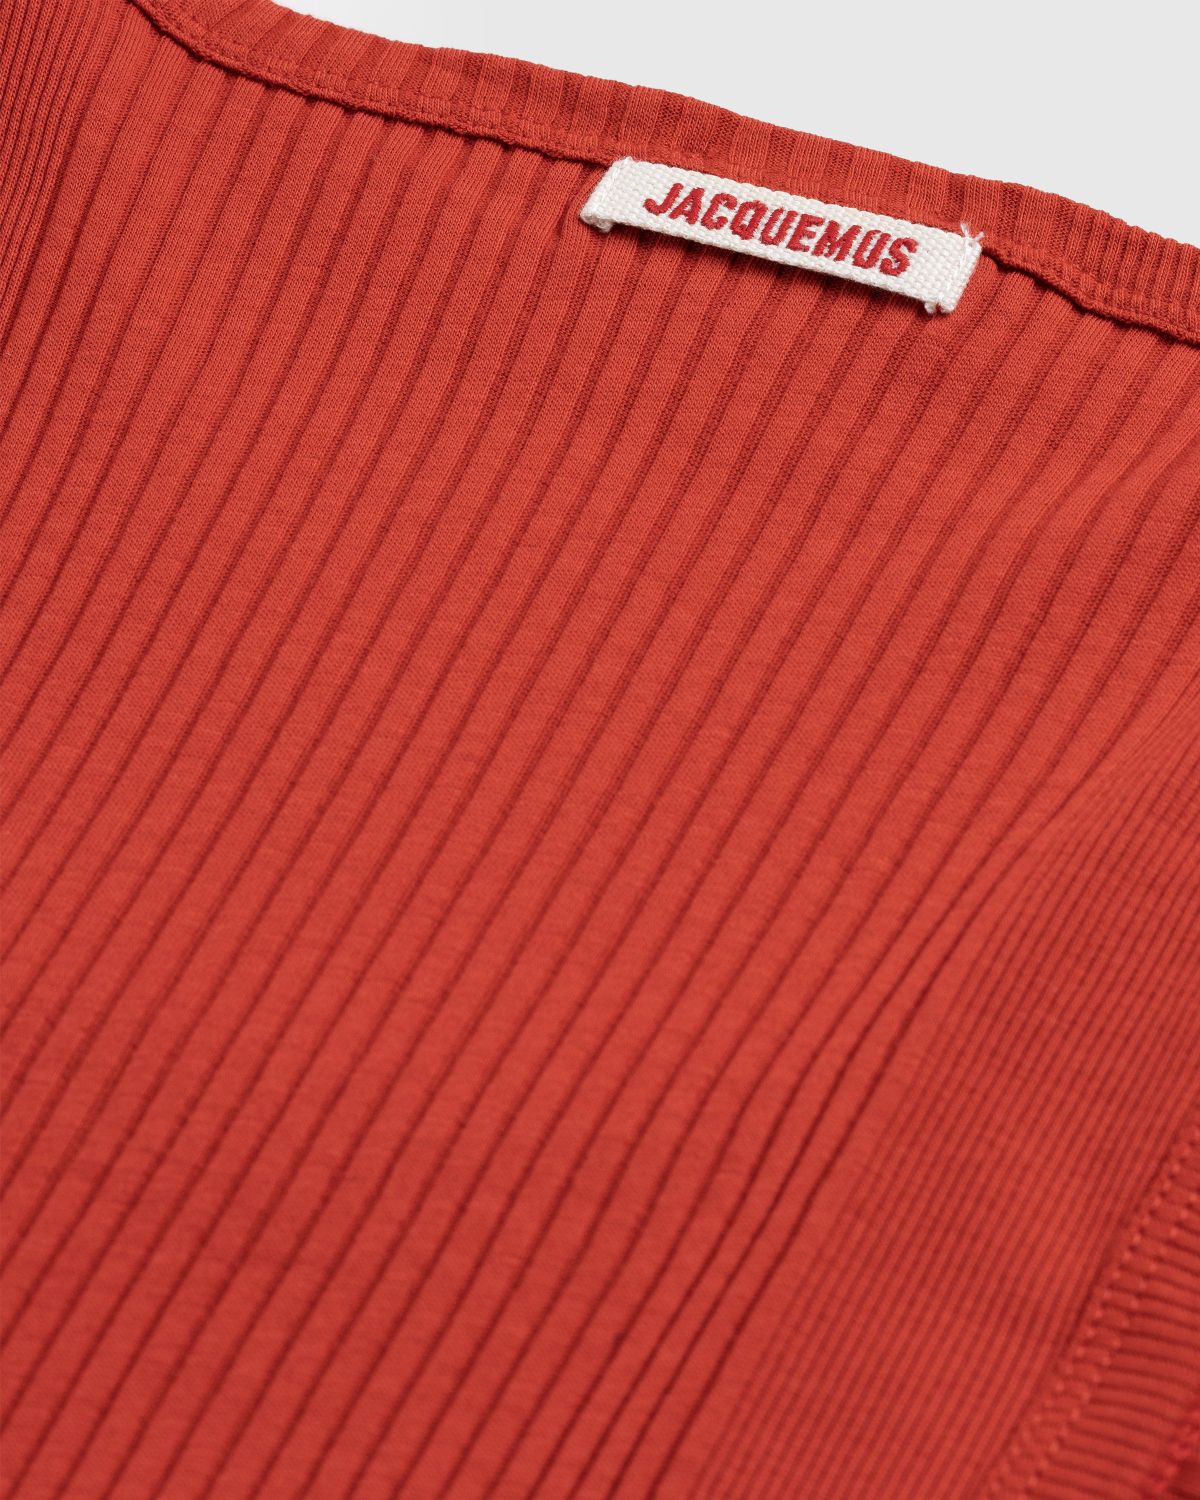 JACQUEMUS – Le Débardeur Caraco Red - Men Tops - RED - Image 6